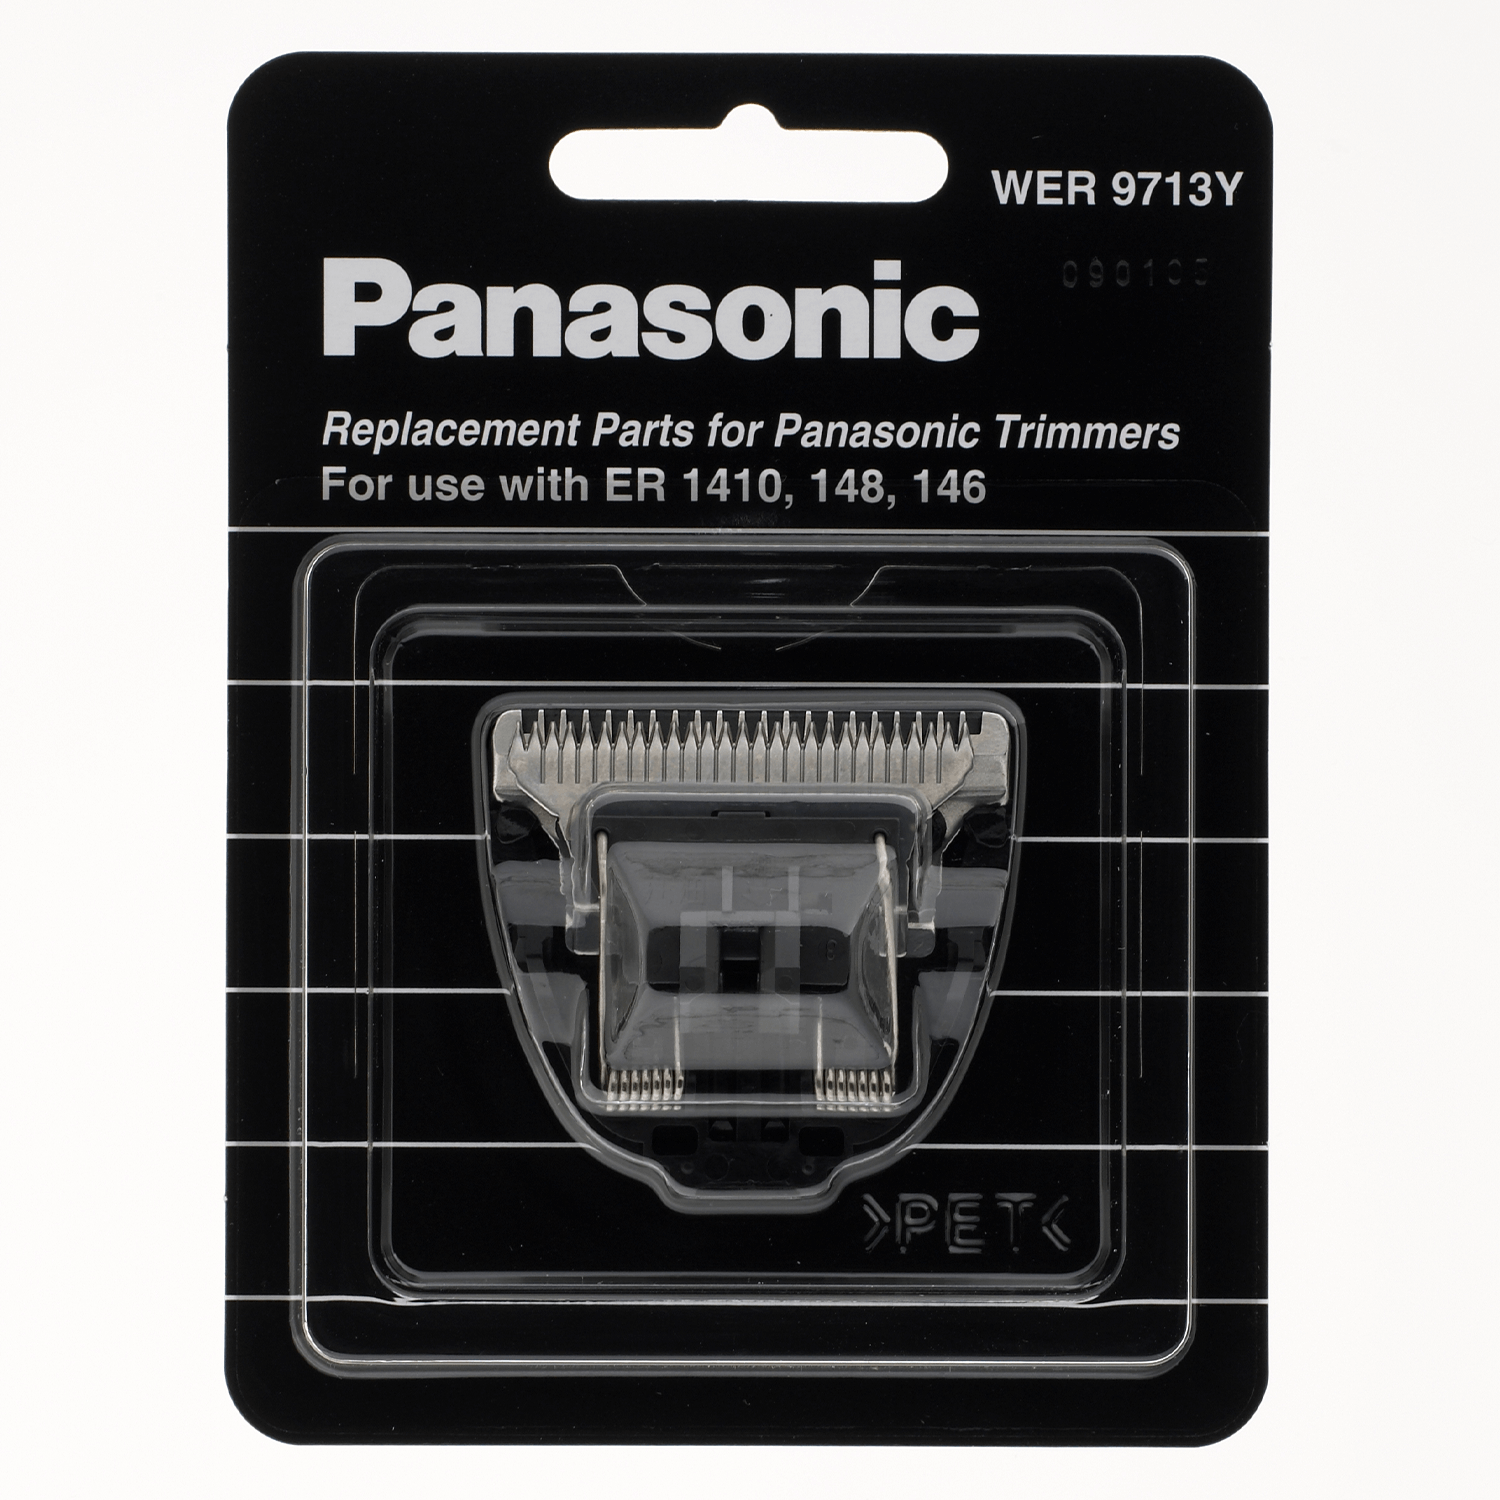 Produktbild von Panasonic - Scherkopf ER-1411 WER 9713Y